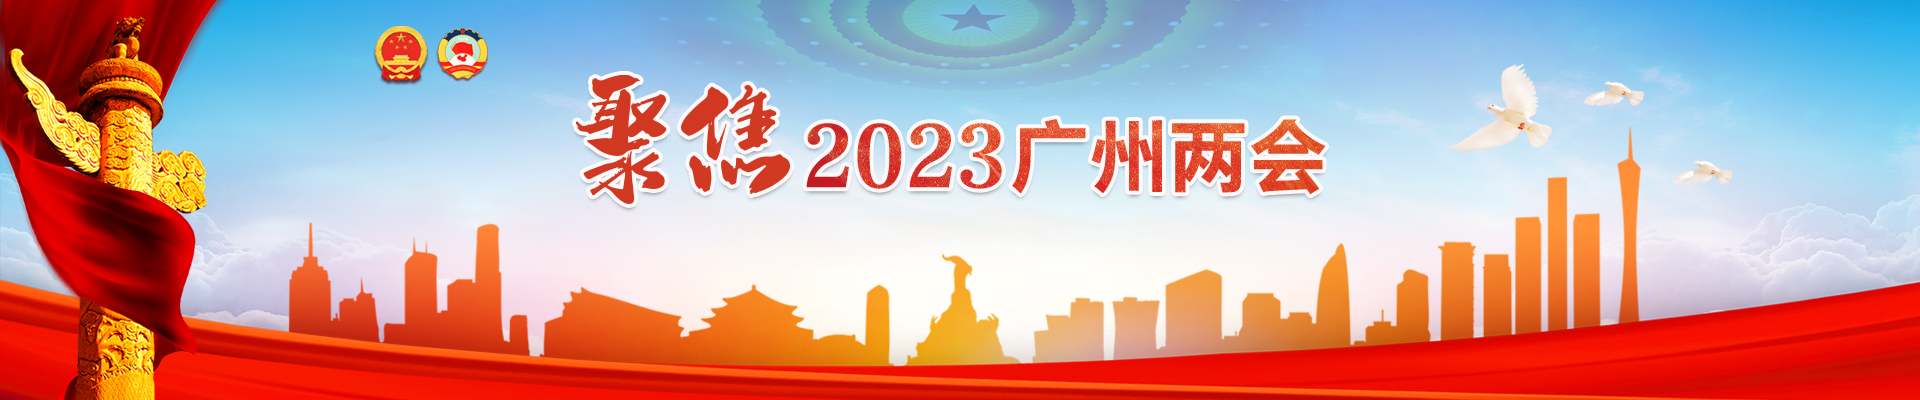 聚焦2023广州两会专题